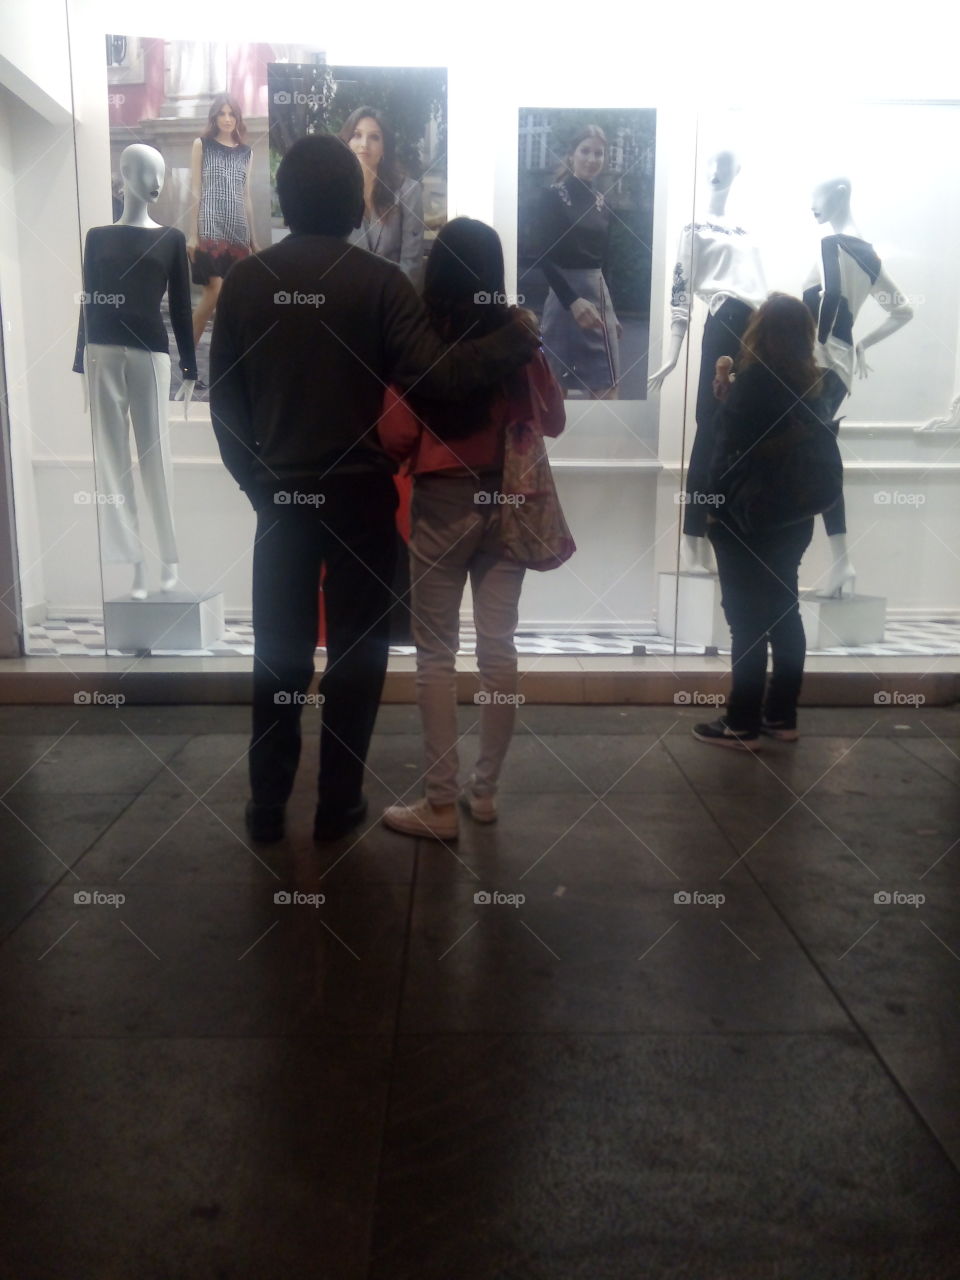 gente mirando un aparador de una tienda de ropa con modelos y maniquíes atrás del vidrio, vistiendo ropa de moda y temporada